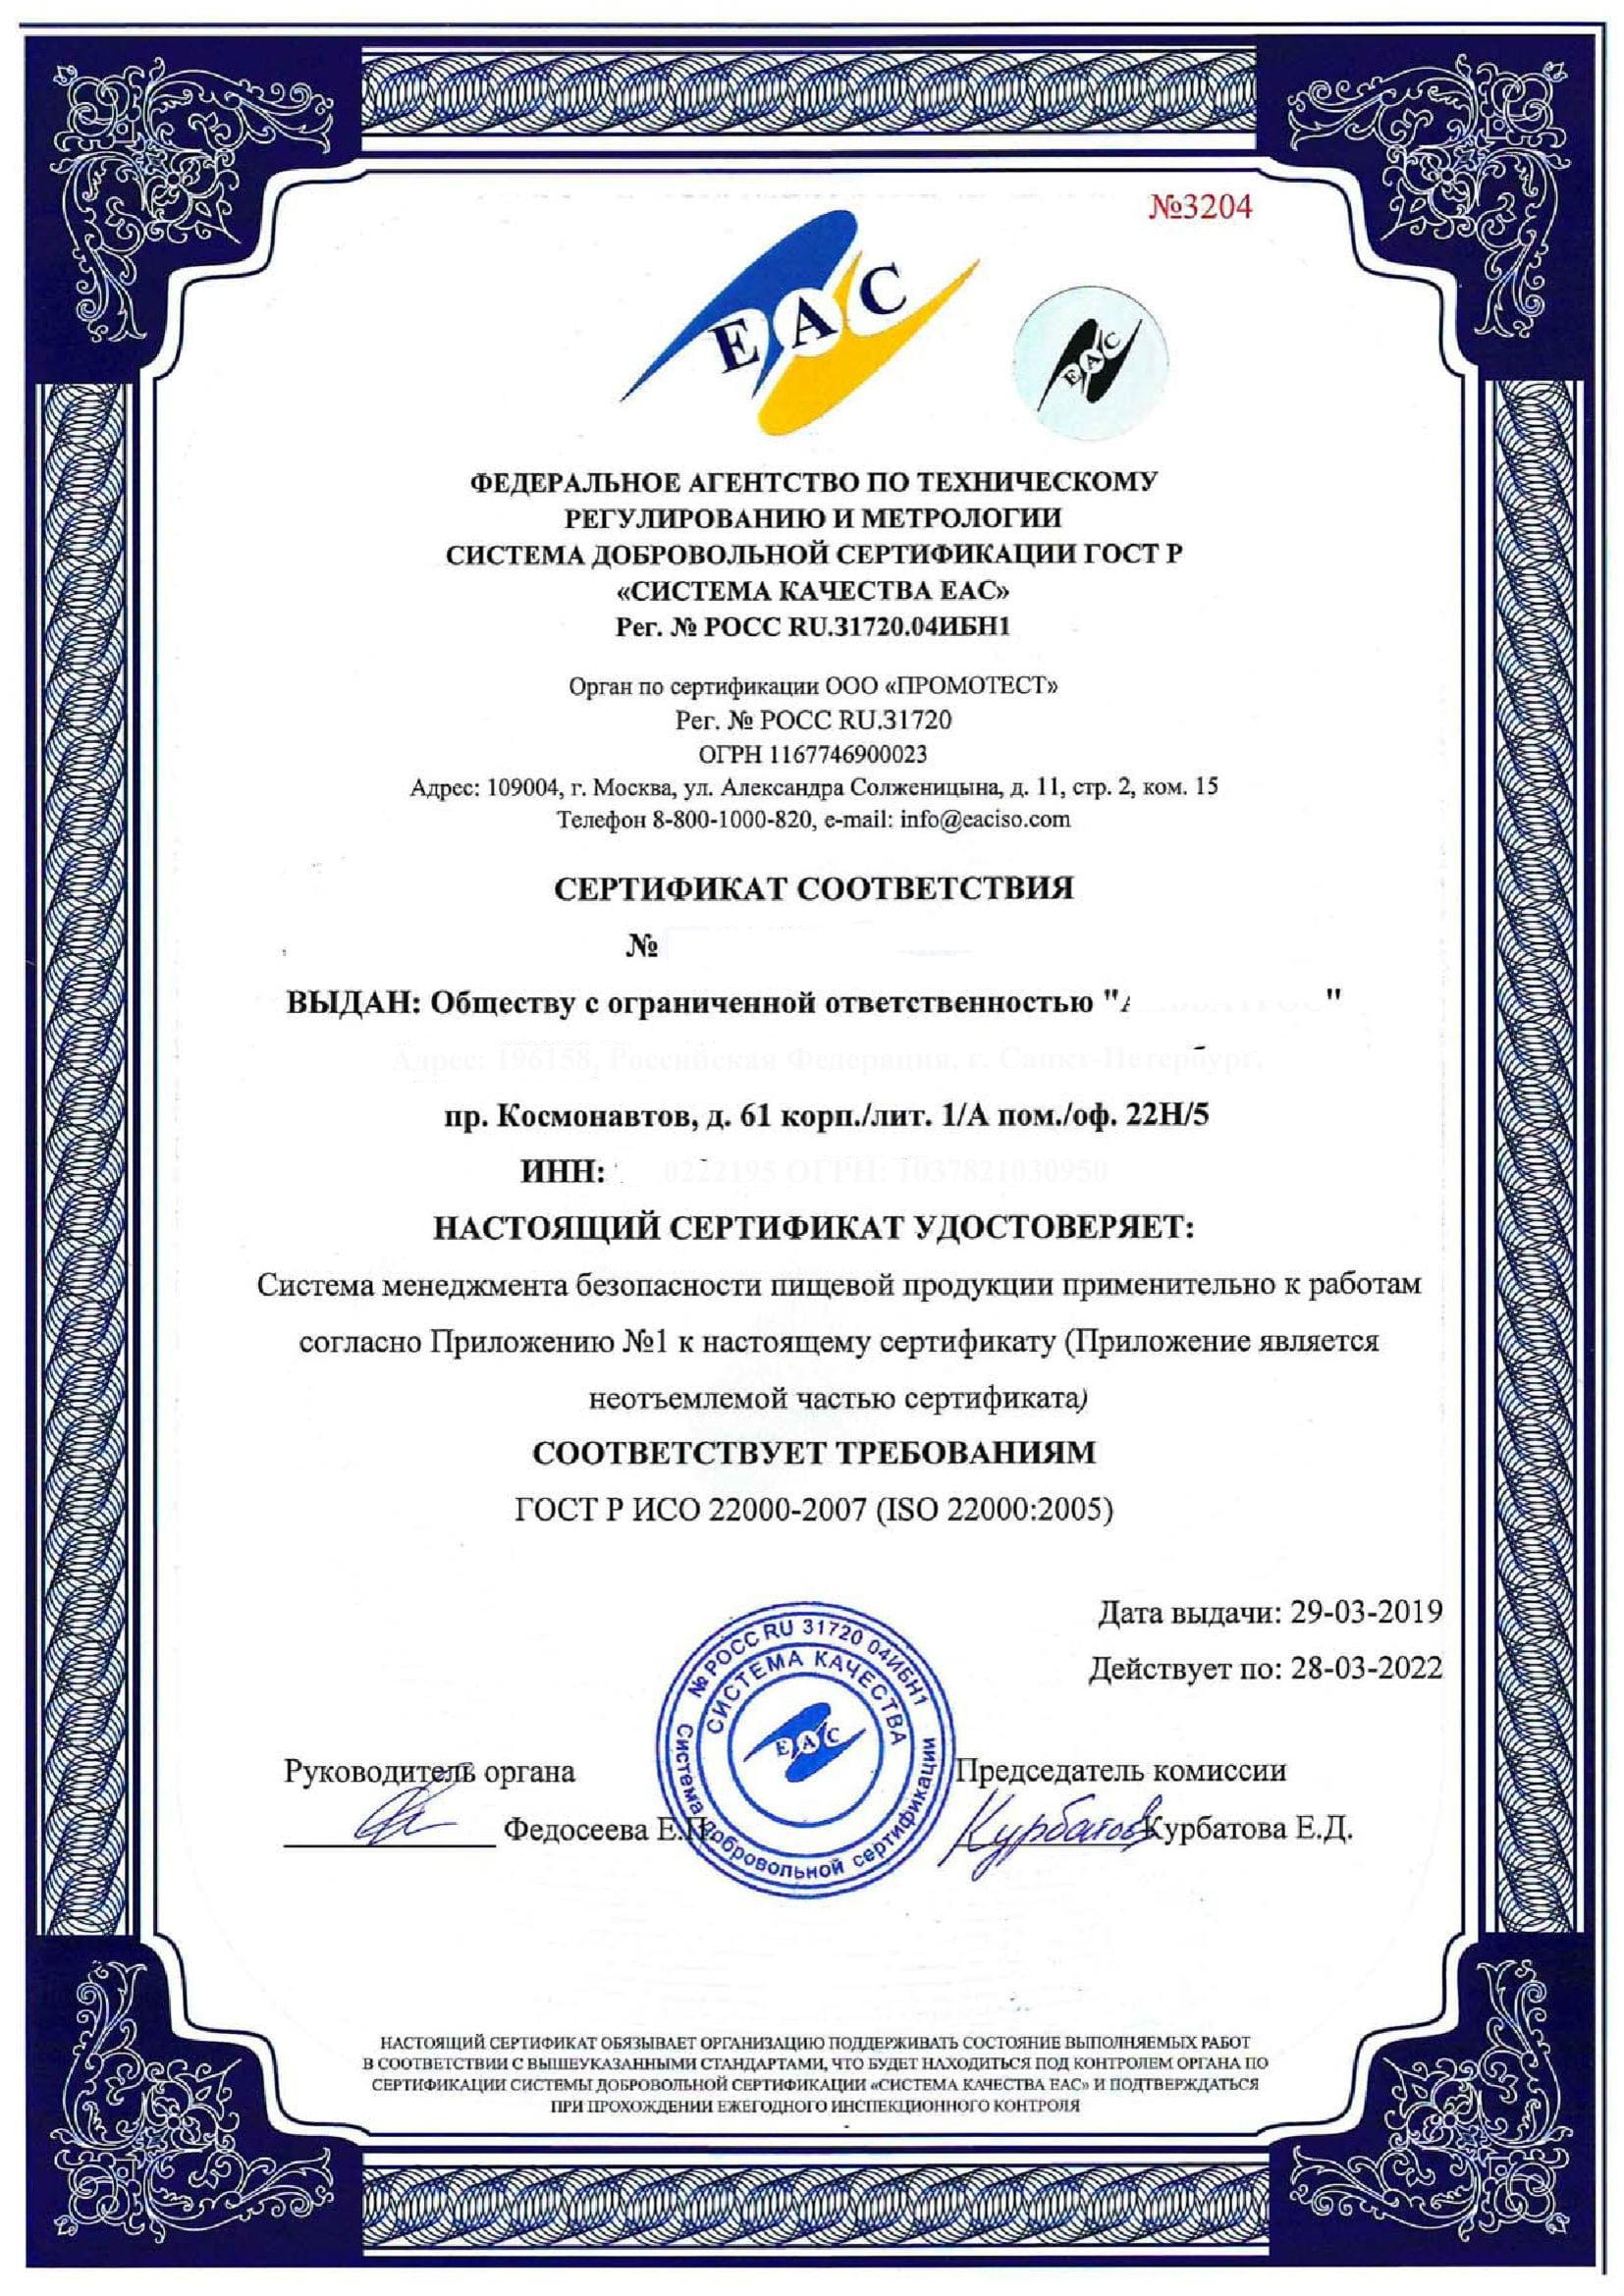 Сертификат ГОСТ Р ИСО 22000